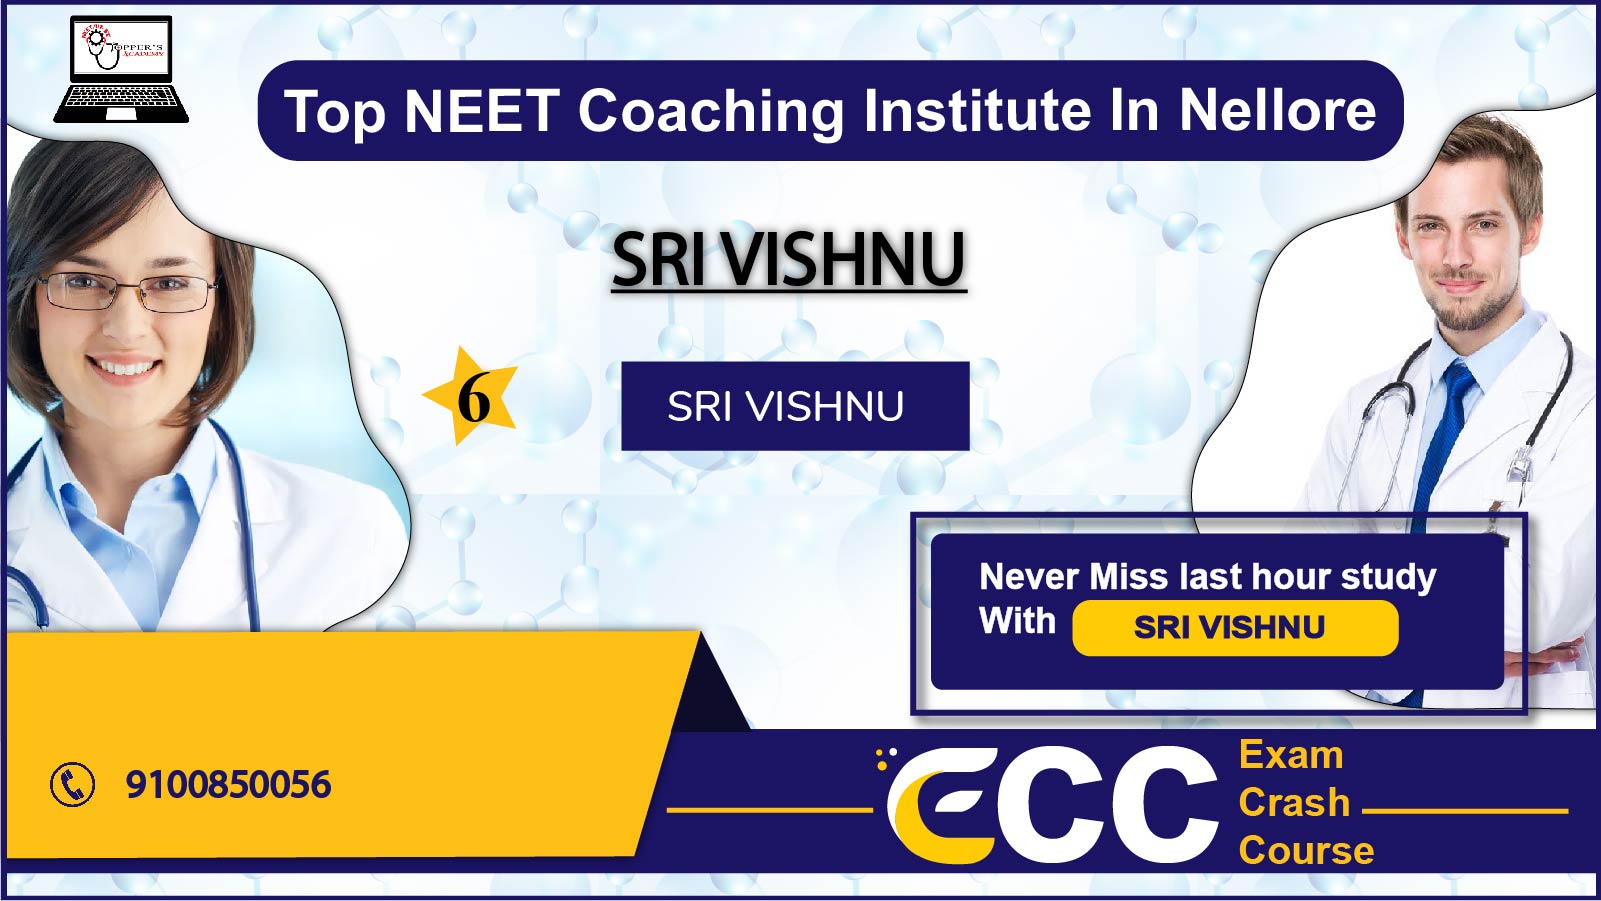 SRI VISHNU NEET Coaching In Nellore